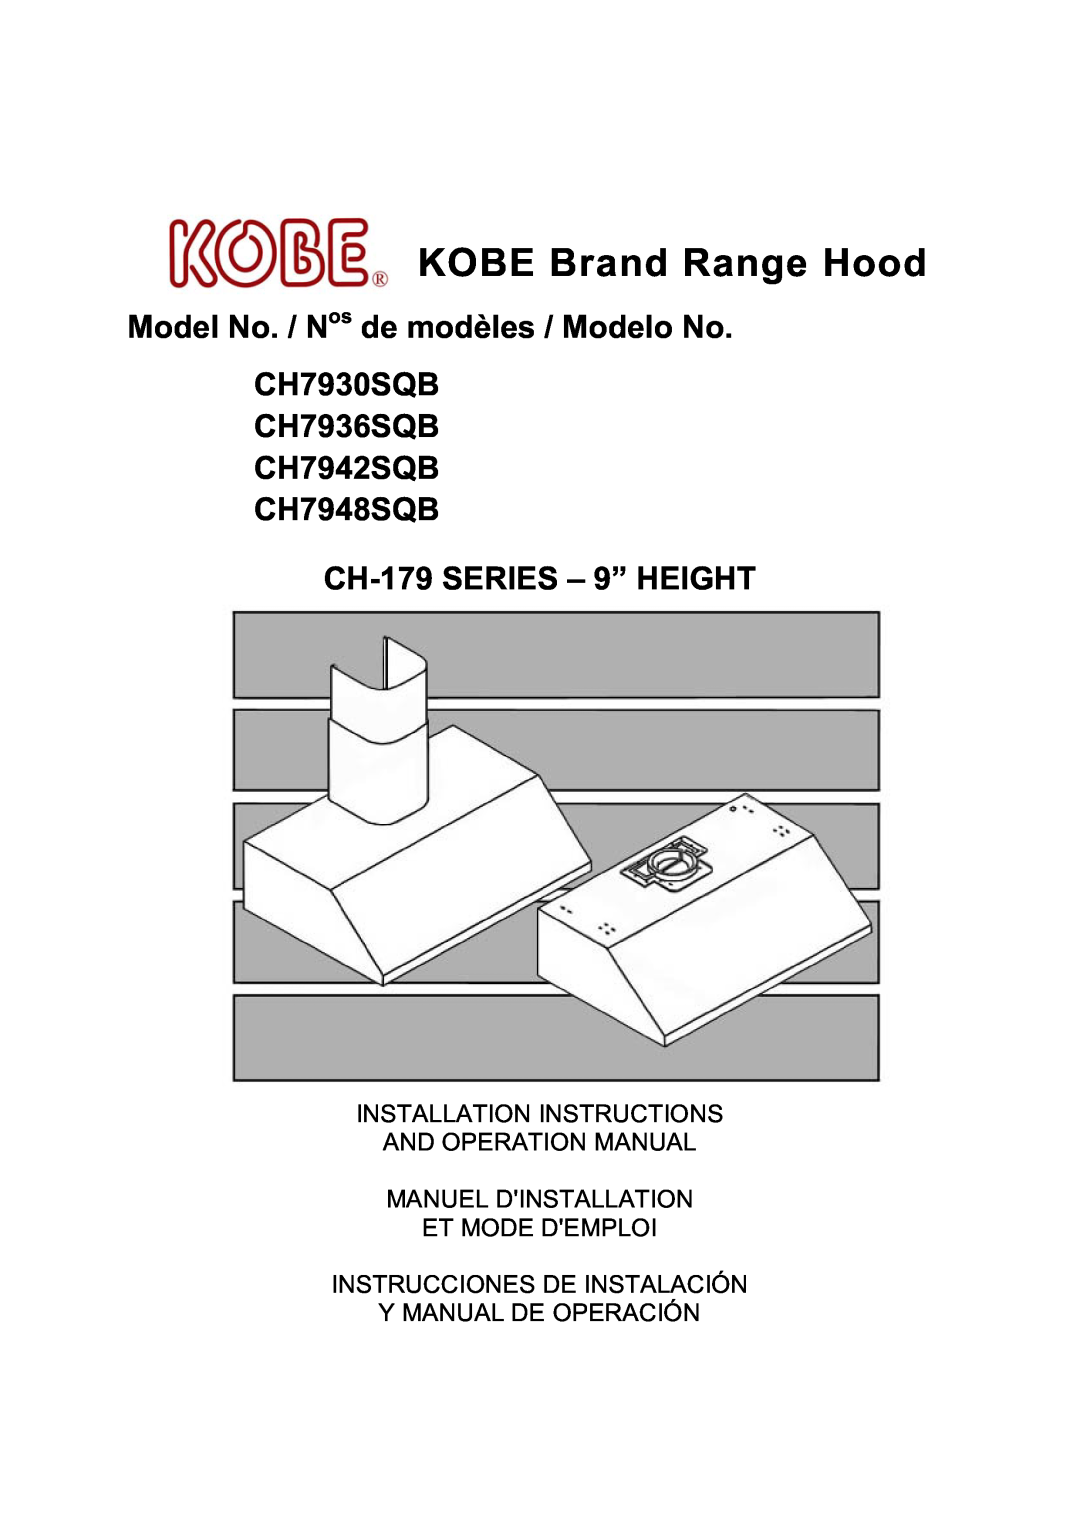 Kobe Range Hoods CH7942SQB installation instructions Installation Instructions And Operation Manual Manuel Dinstallation 